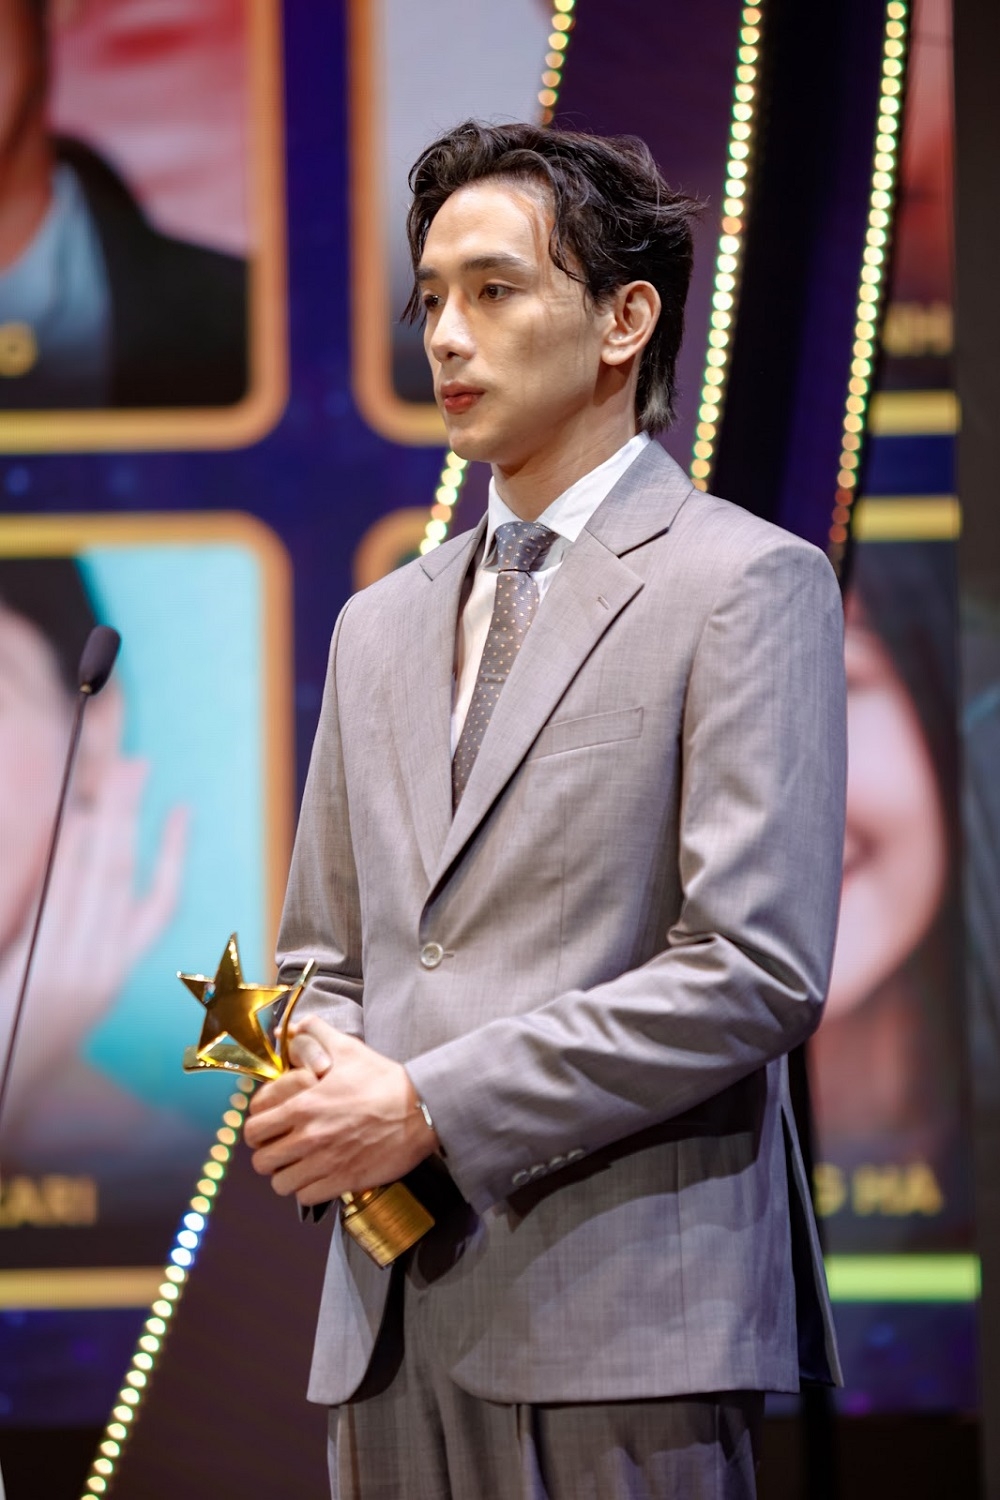 Thuận Nguyễn và Hoàng Hà nhận giải diễn viên phụ xuất sắc nhất Ngôi Sao Xanh 2022